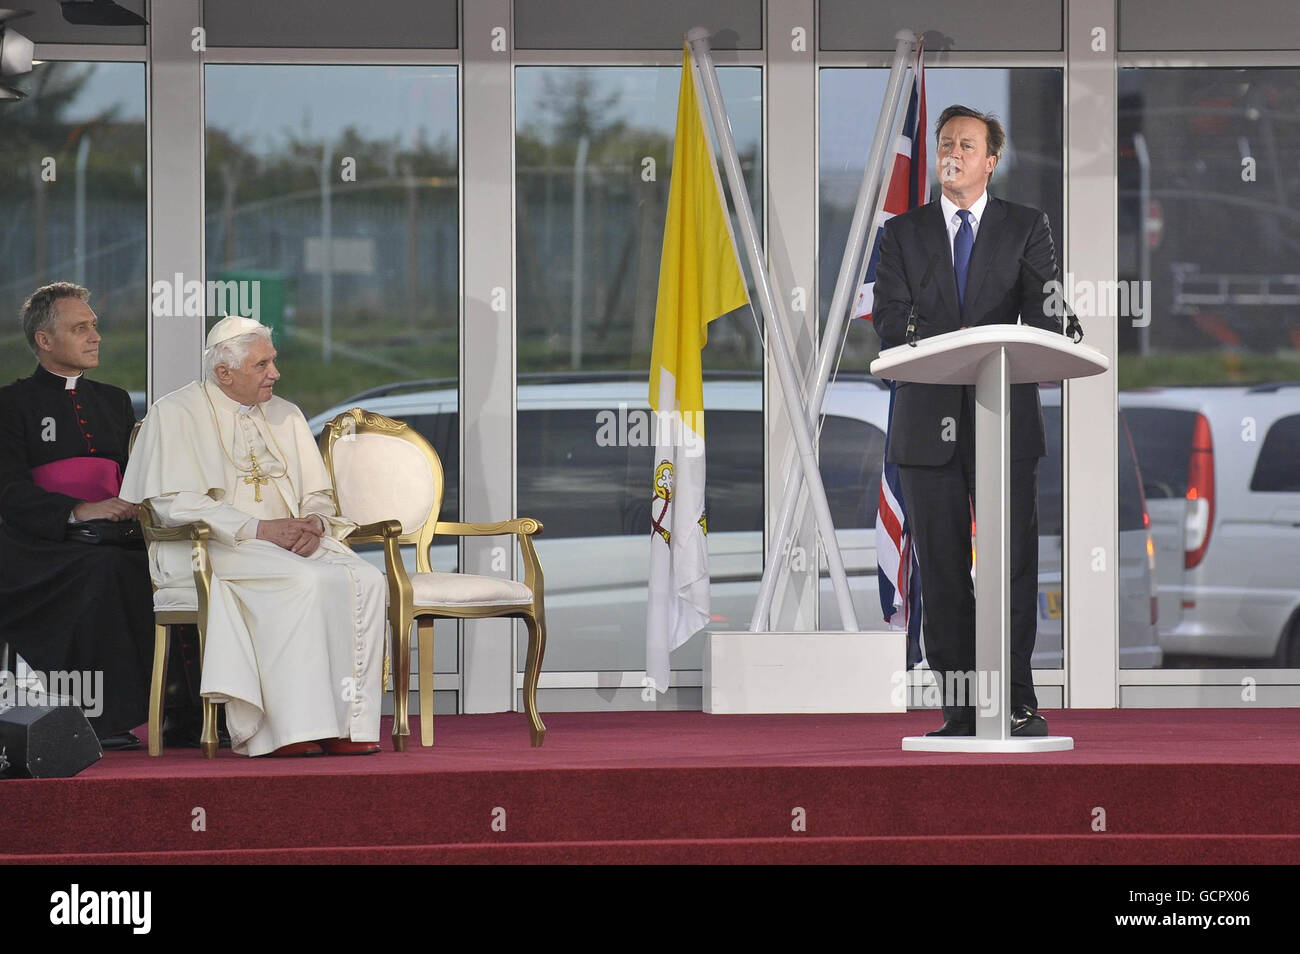 Le pape Benoît XVI écoute le Premier ministre David Cameron lors d'une cérémonie de départ à l'aéroport international de Birmingham le dernier jour de sa visite d'État au Royaume-Uni. Banque D'Images